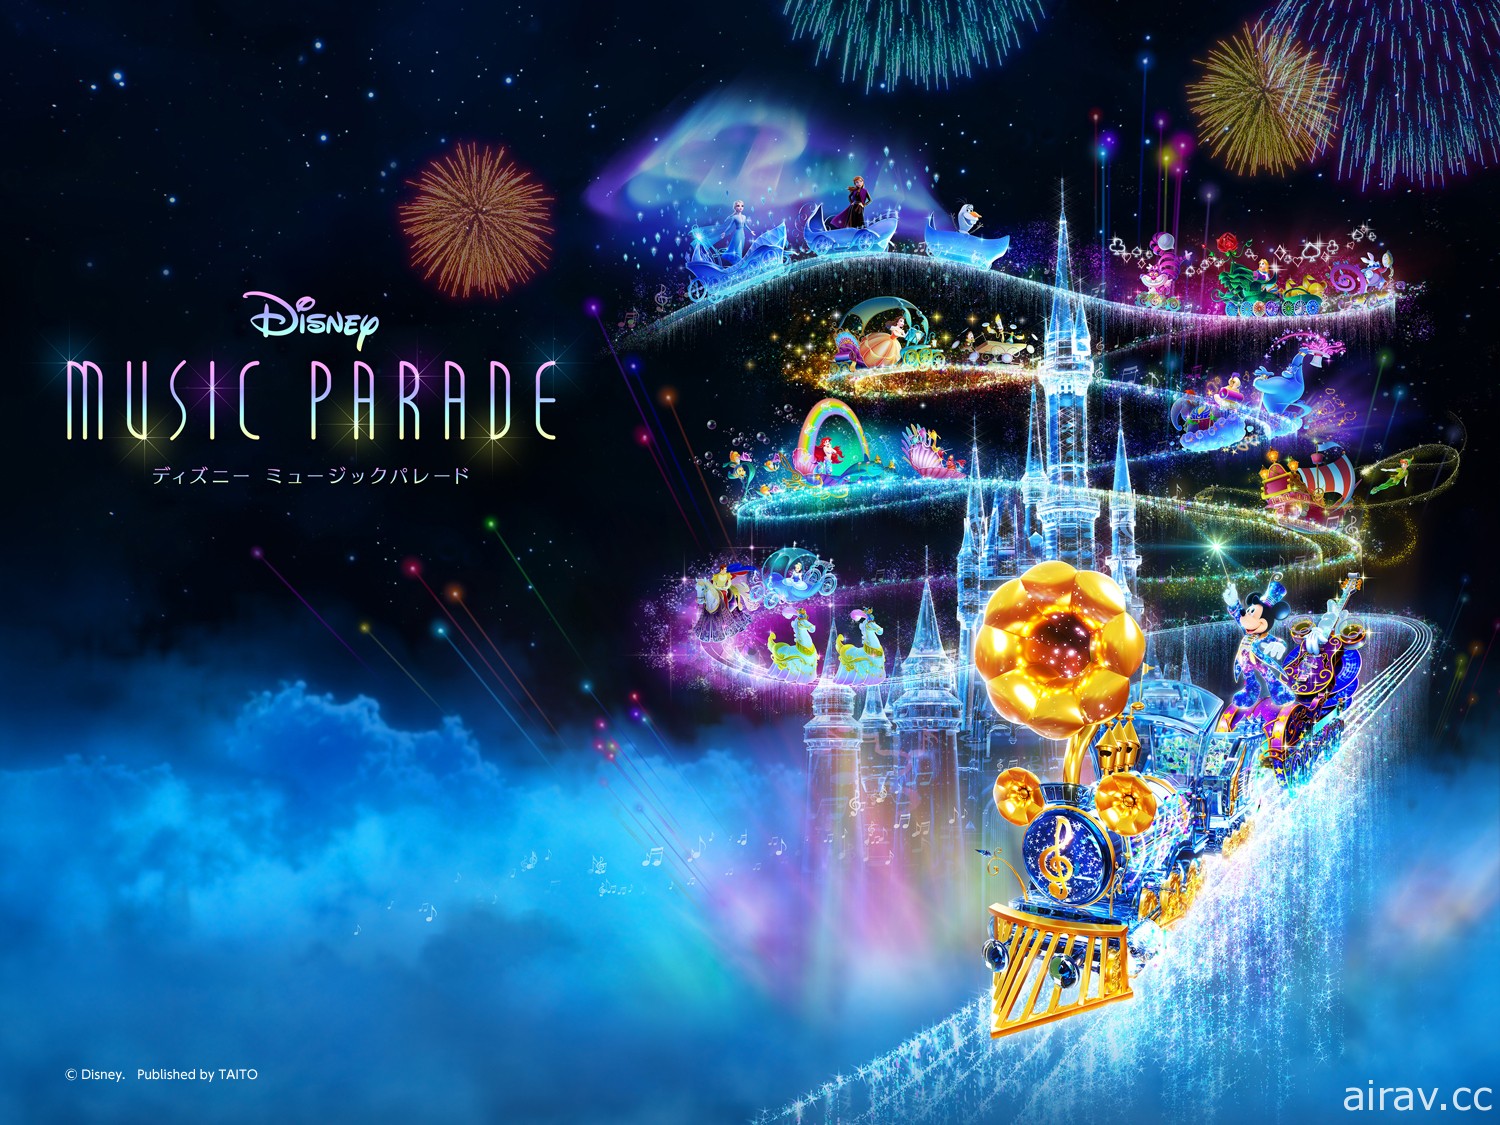 音乐节奏游戏《迪士尼 音乐游行》于日本上市 跟随乐队演奏迪士尼乐曲